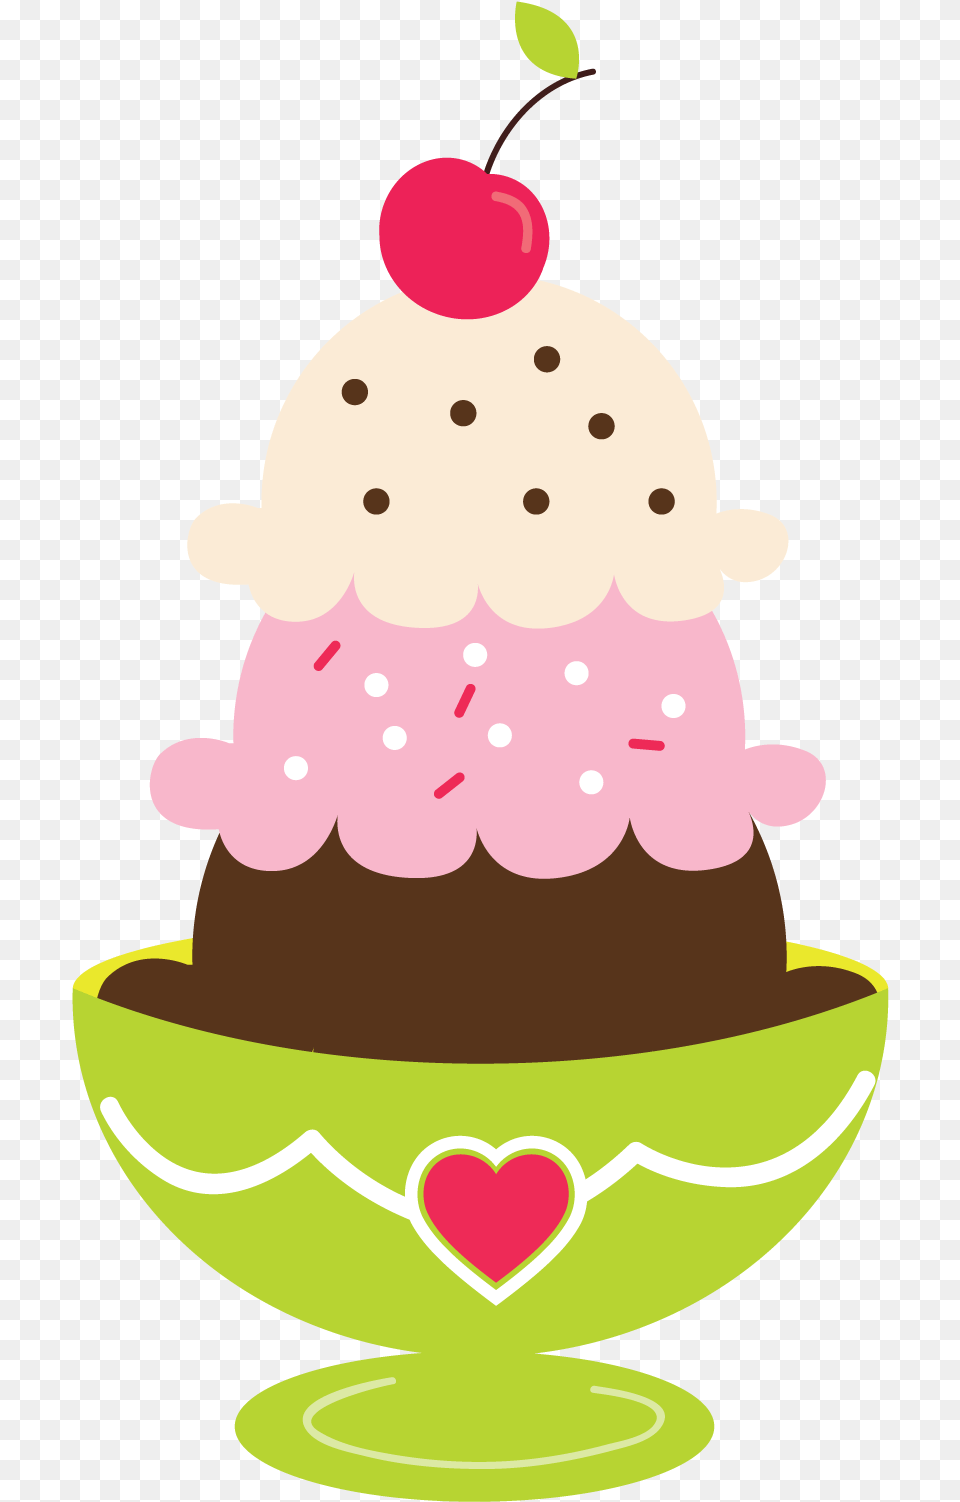 Ice Cream Sundae Clipart Ice Cream Sundae Graphic, Ice Cream, Dessert, Food, Snowman Png